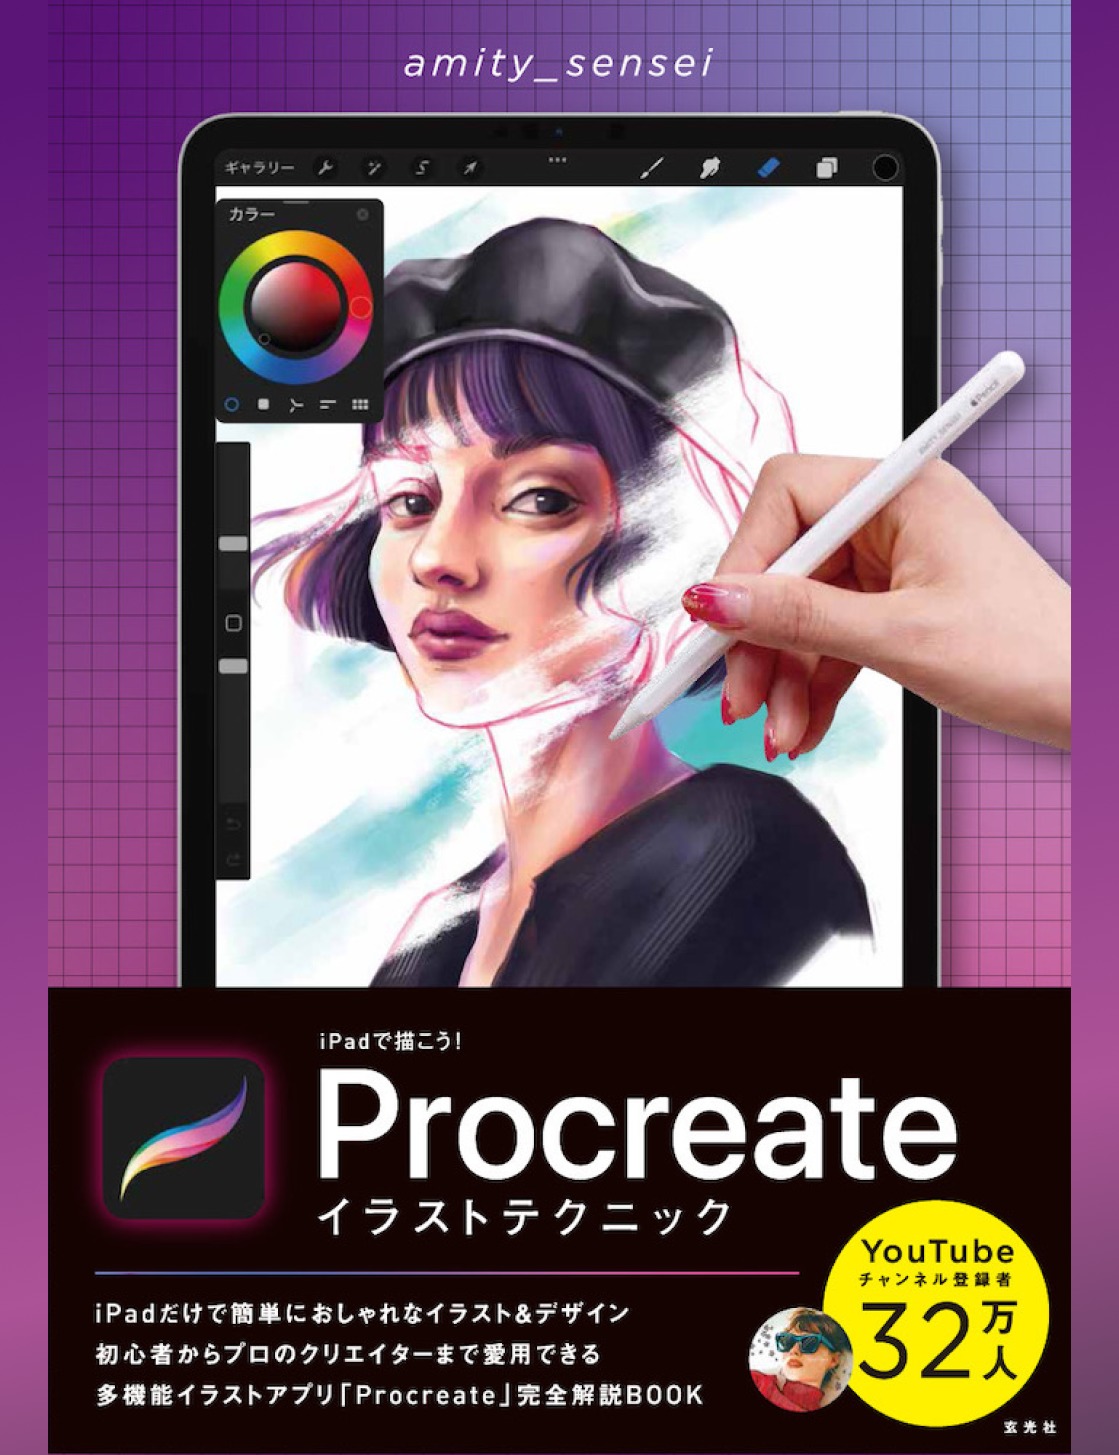 iPad本「iPadで描こう! Procreateイラストテクニック」発売